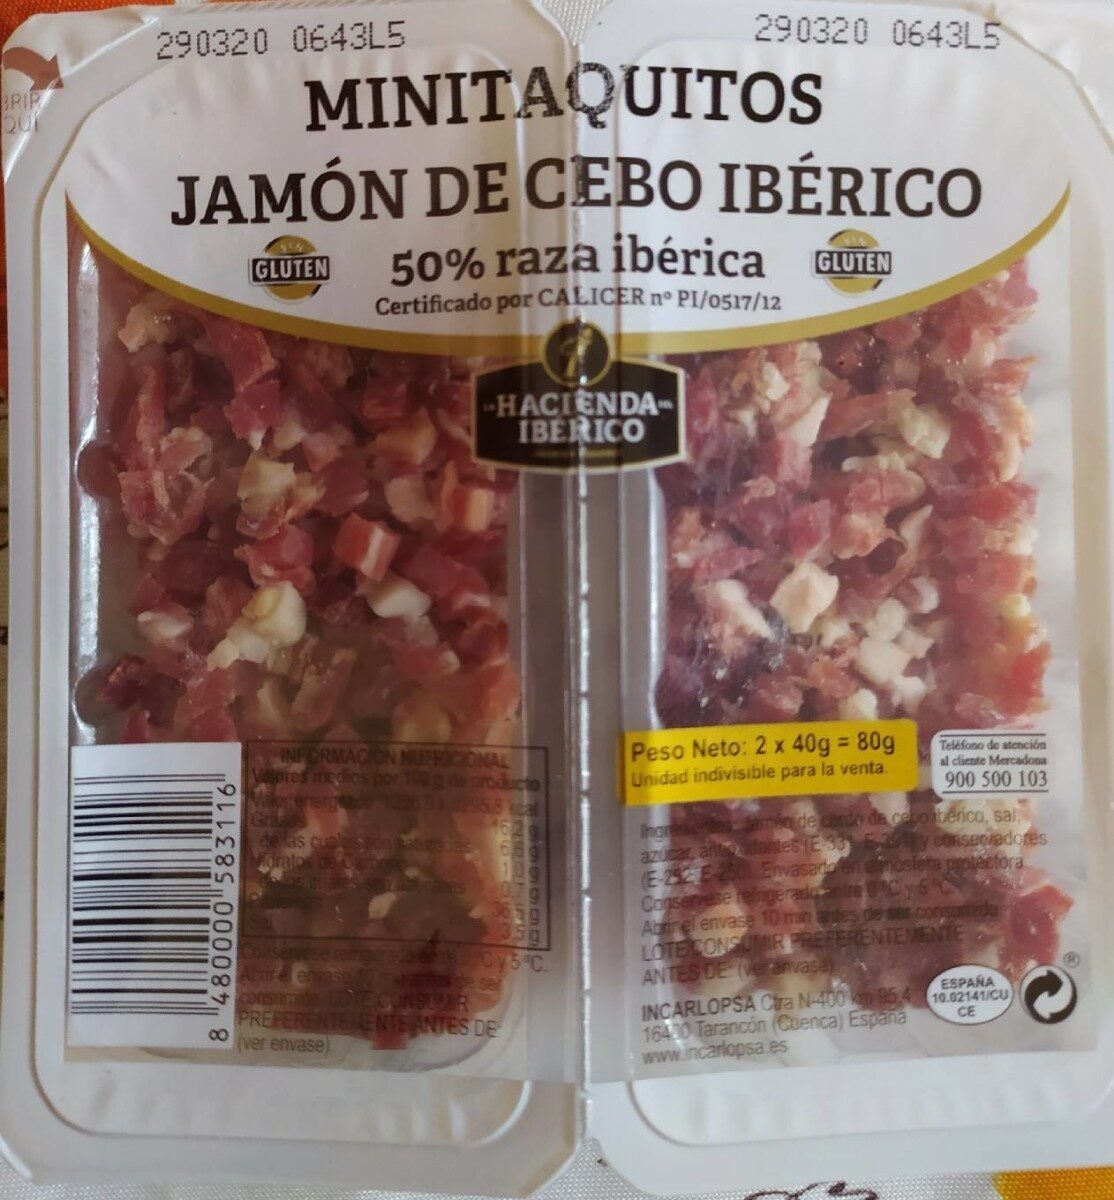 MINITAQUITOS JAMÓN DE CEBO IBÉRICO - Producto